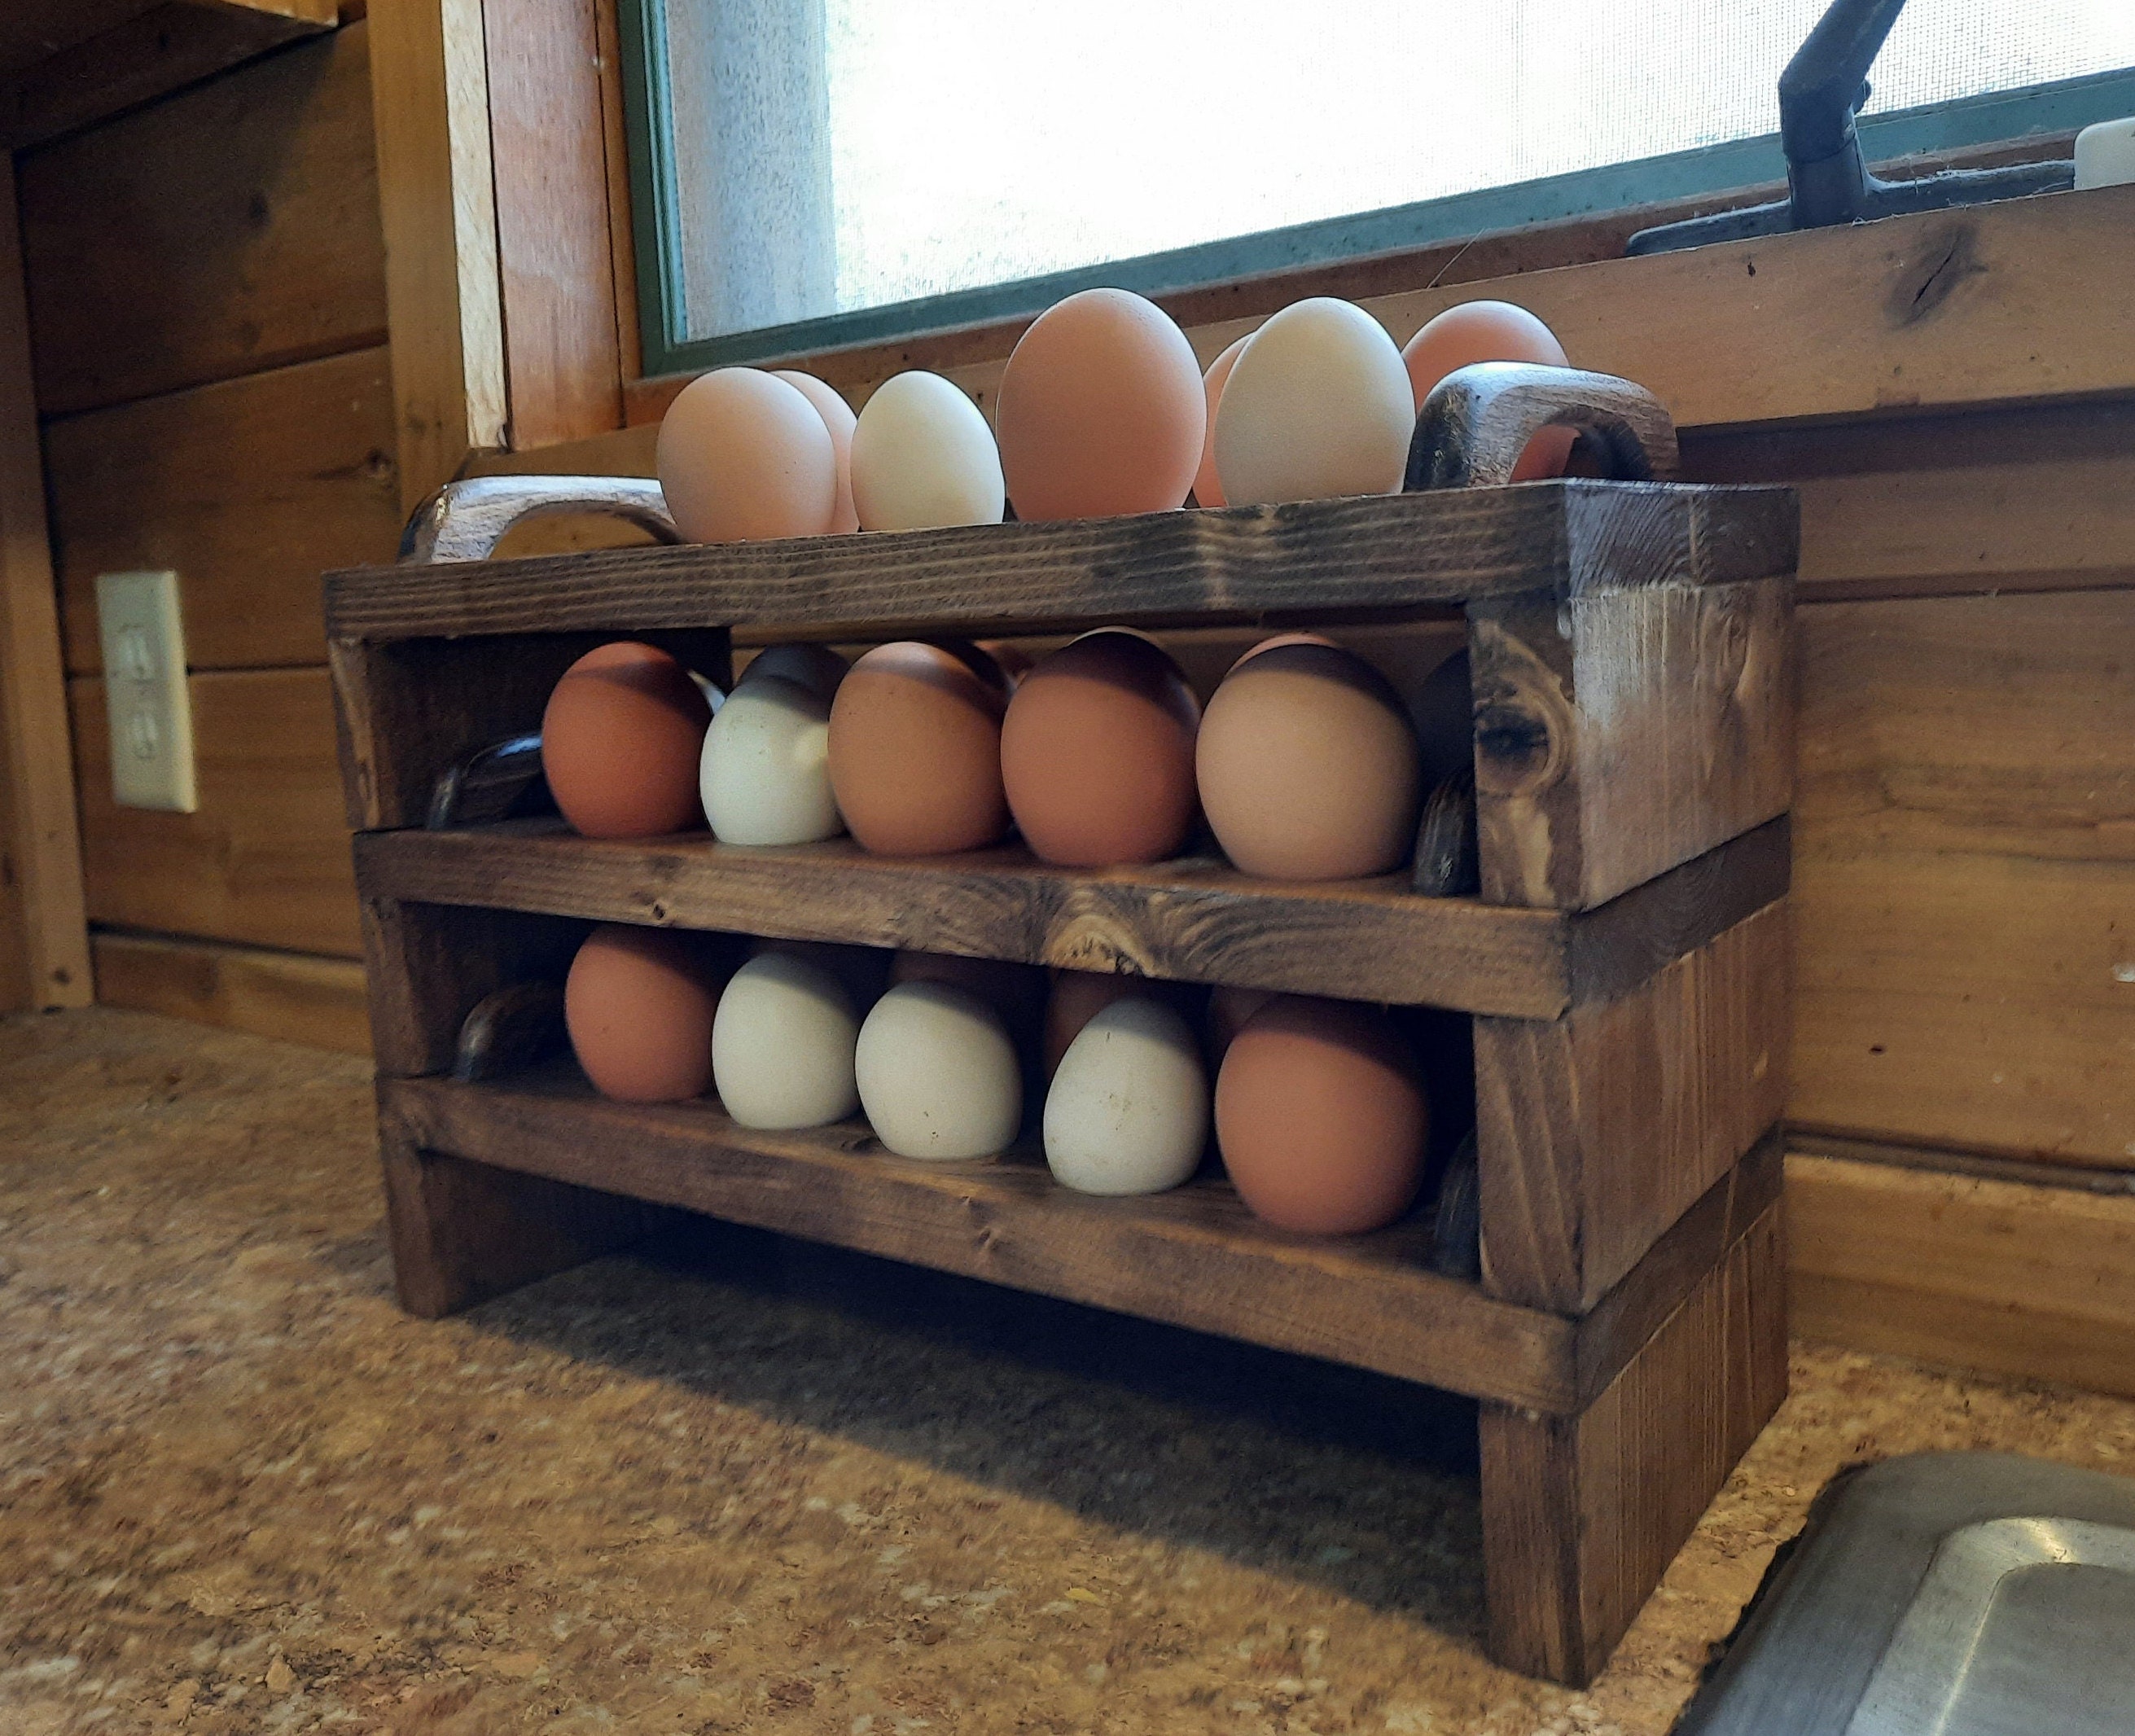  Fresh Egg Holder Countertop, Egg Skelter, Spiral Egg